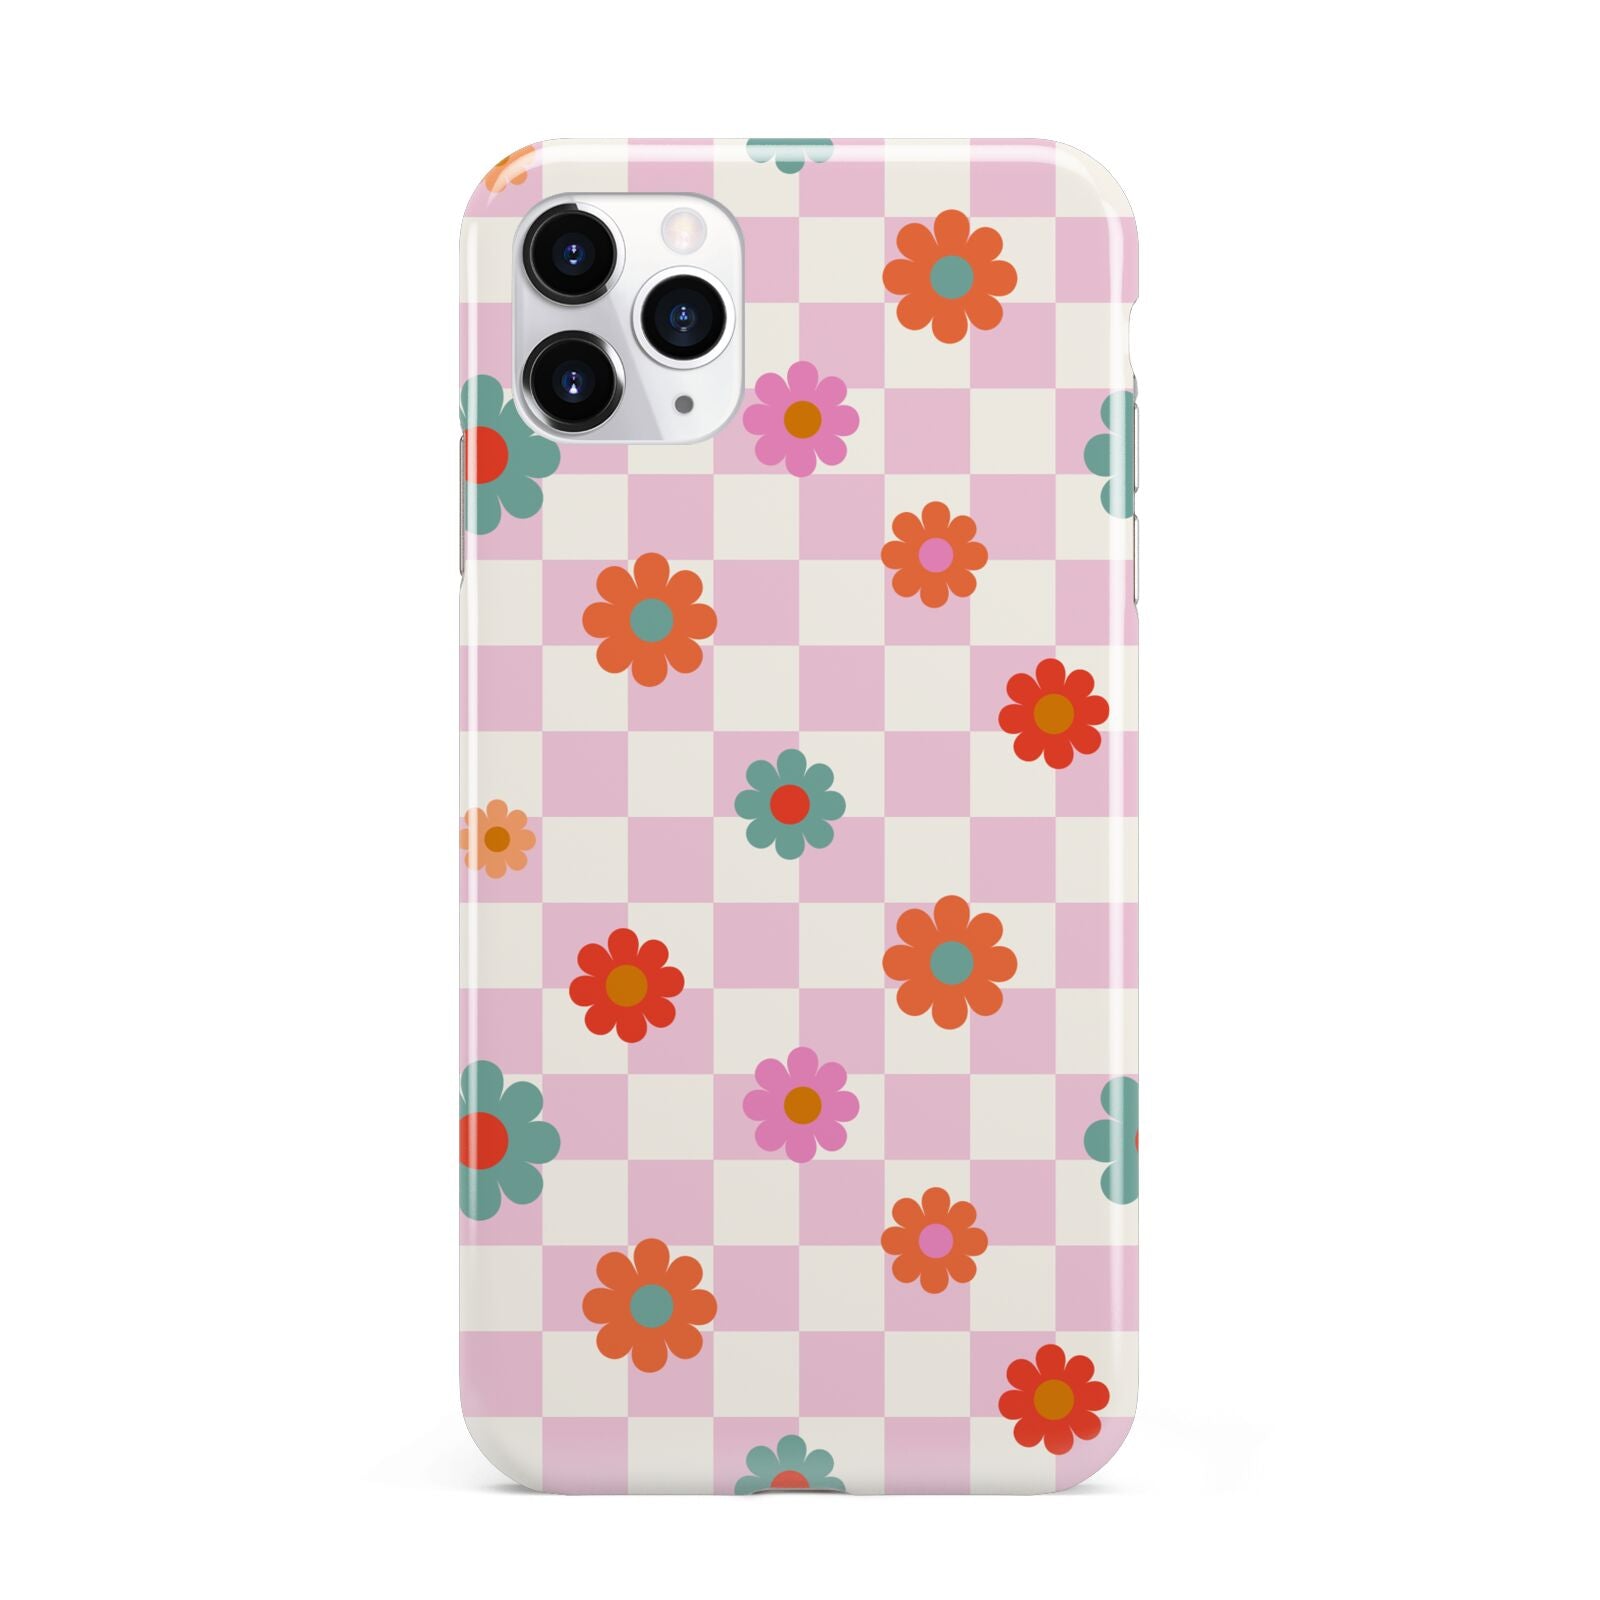 Flower Power iPhone 11 Pro Max 3D Tough Case